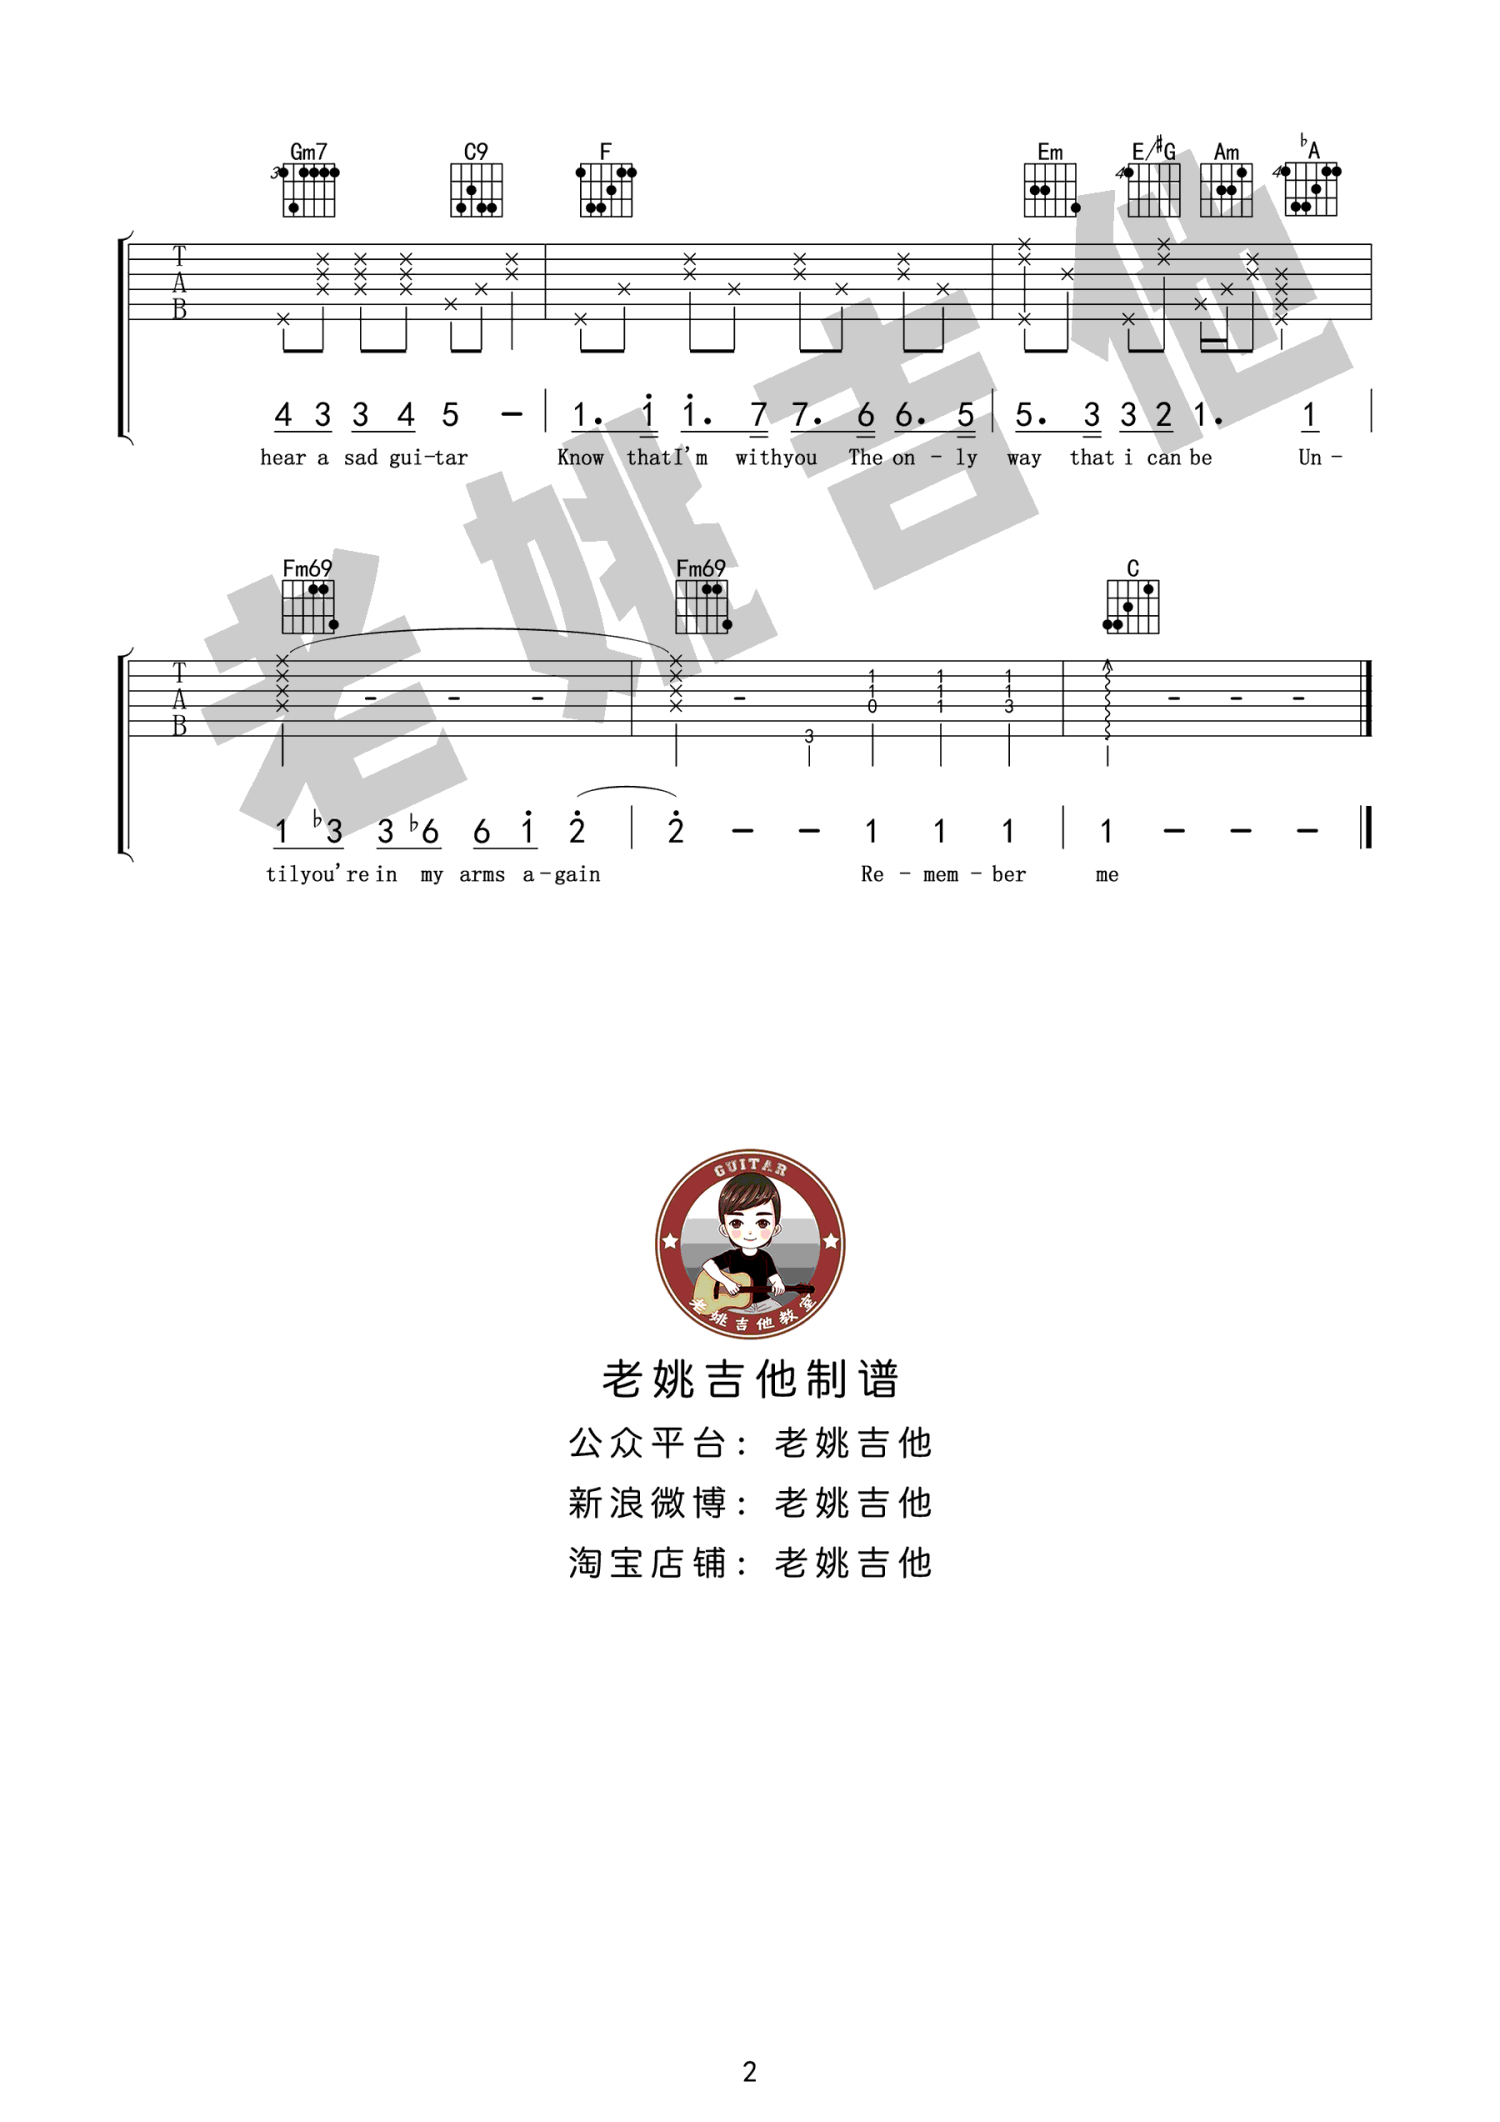 "寻梦环游记"主题曲Remember me吉他谱教学视频[3]爱德文吉他 ... - 热门吉他谱教学视频 - 吉他之家